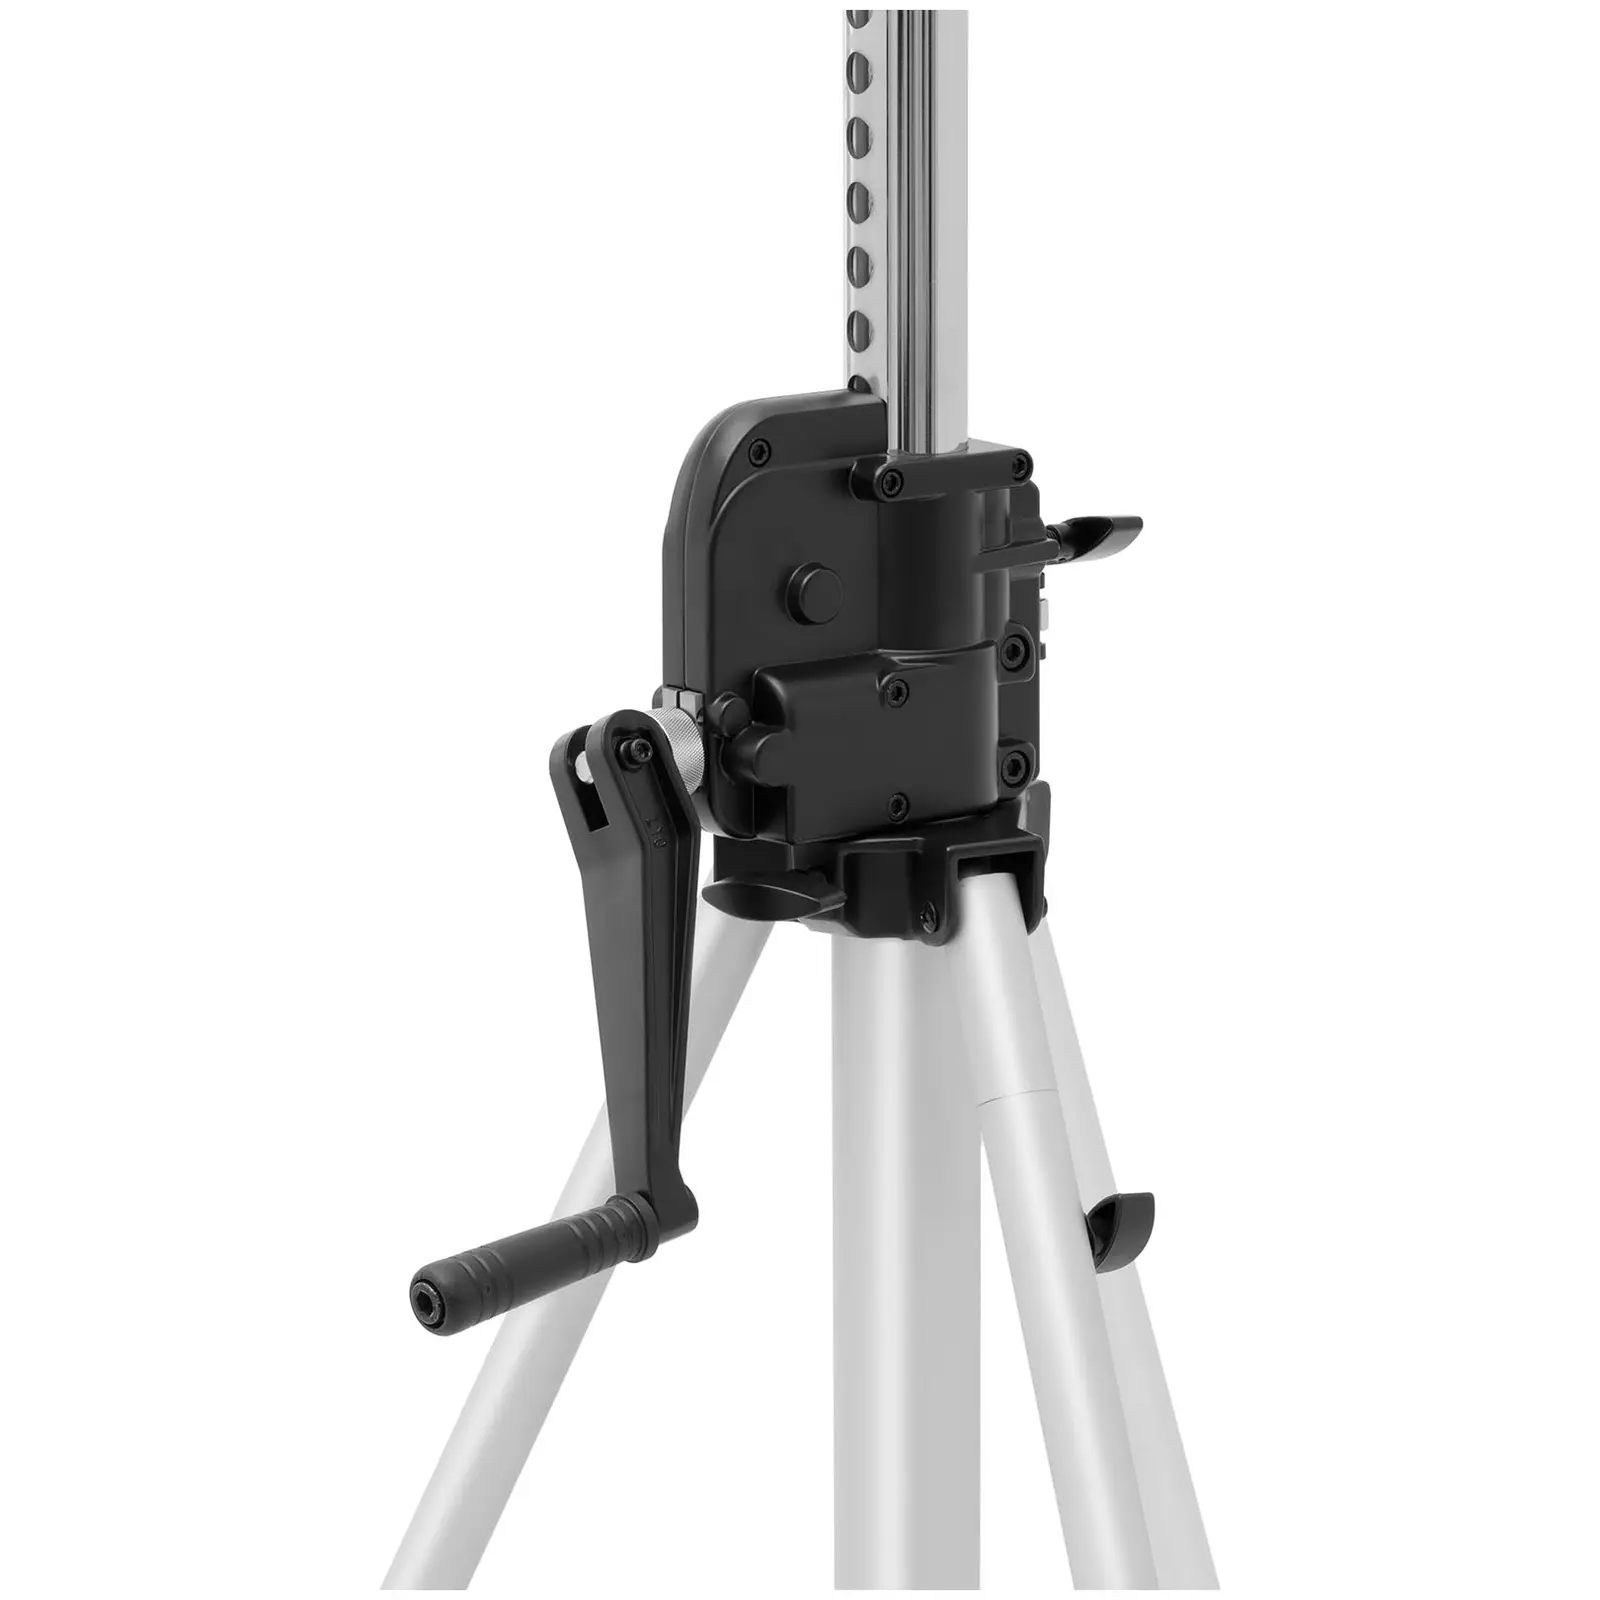 B-varer Light Stand - up to 50 kg - 1.67 - 3.7 m